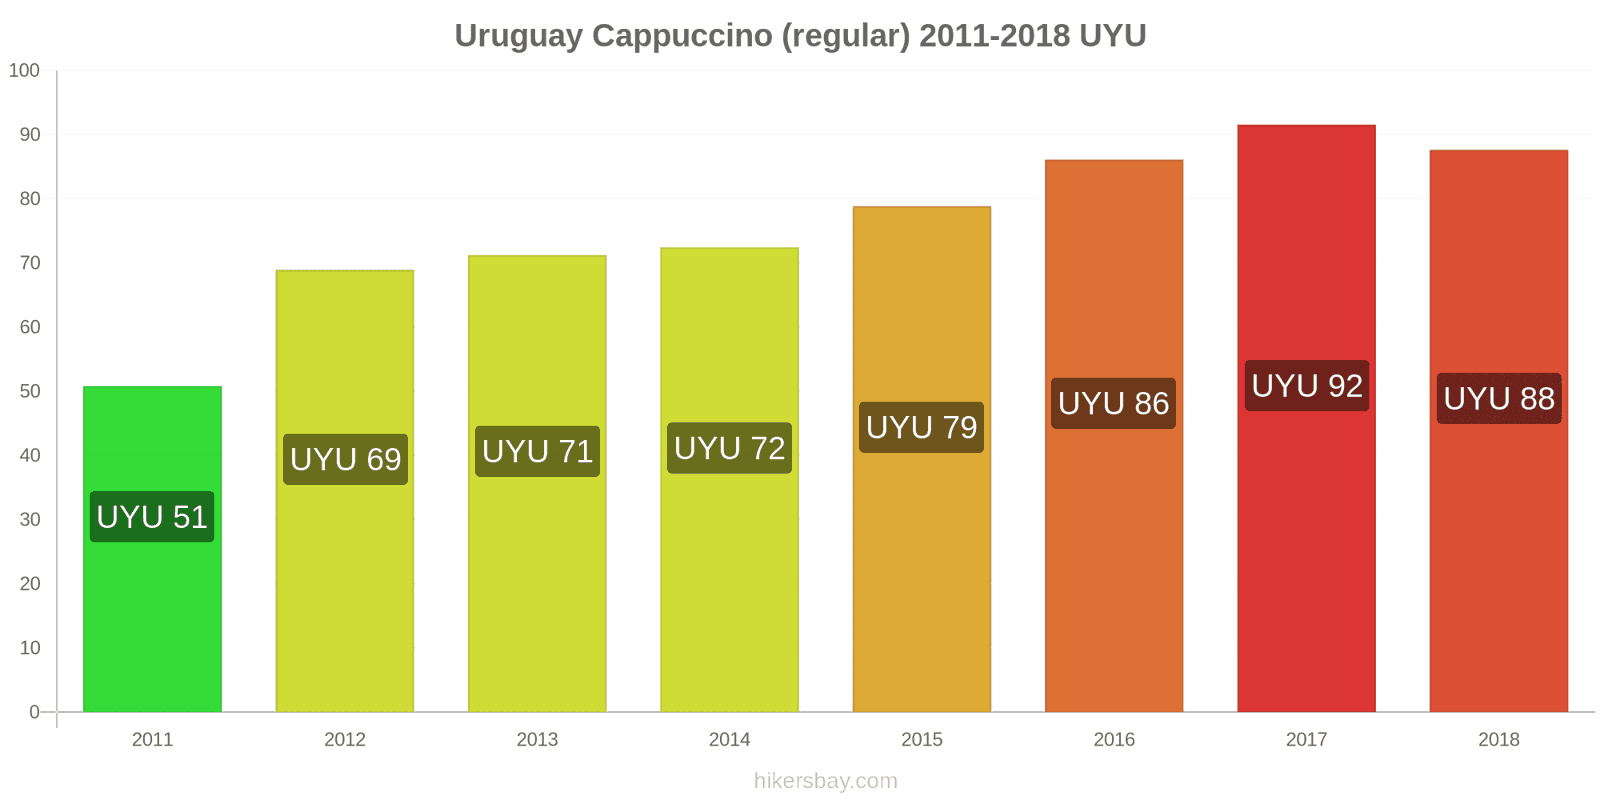 Uruguay price changes Cappuccino hikersbay.com